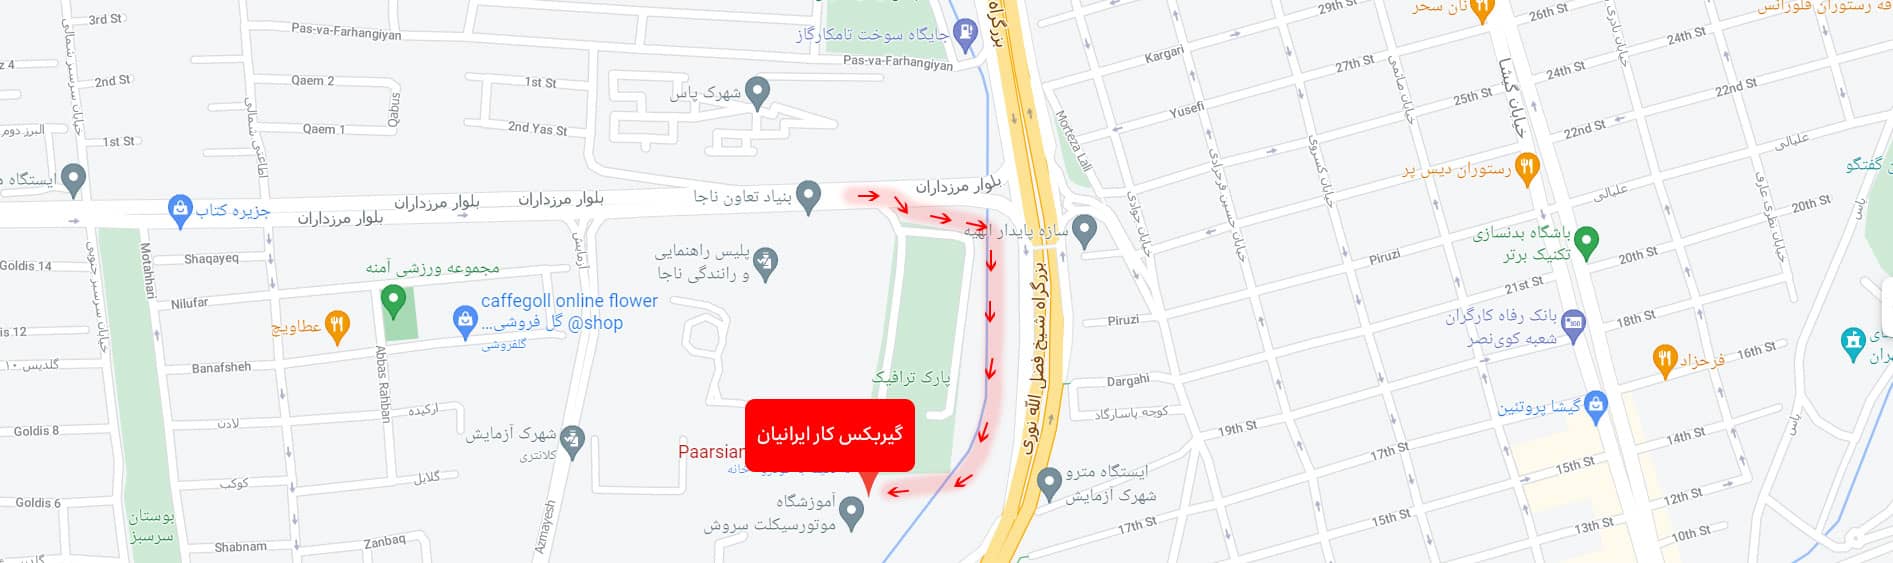 نقشه گیربکس کار ایرانیان در تهران